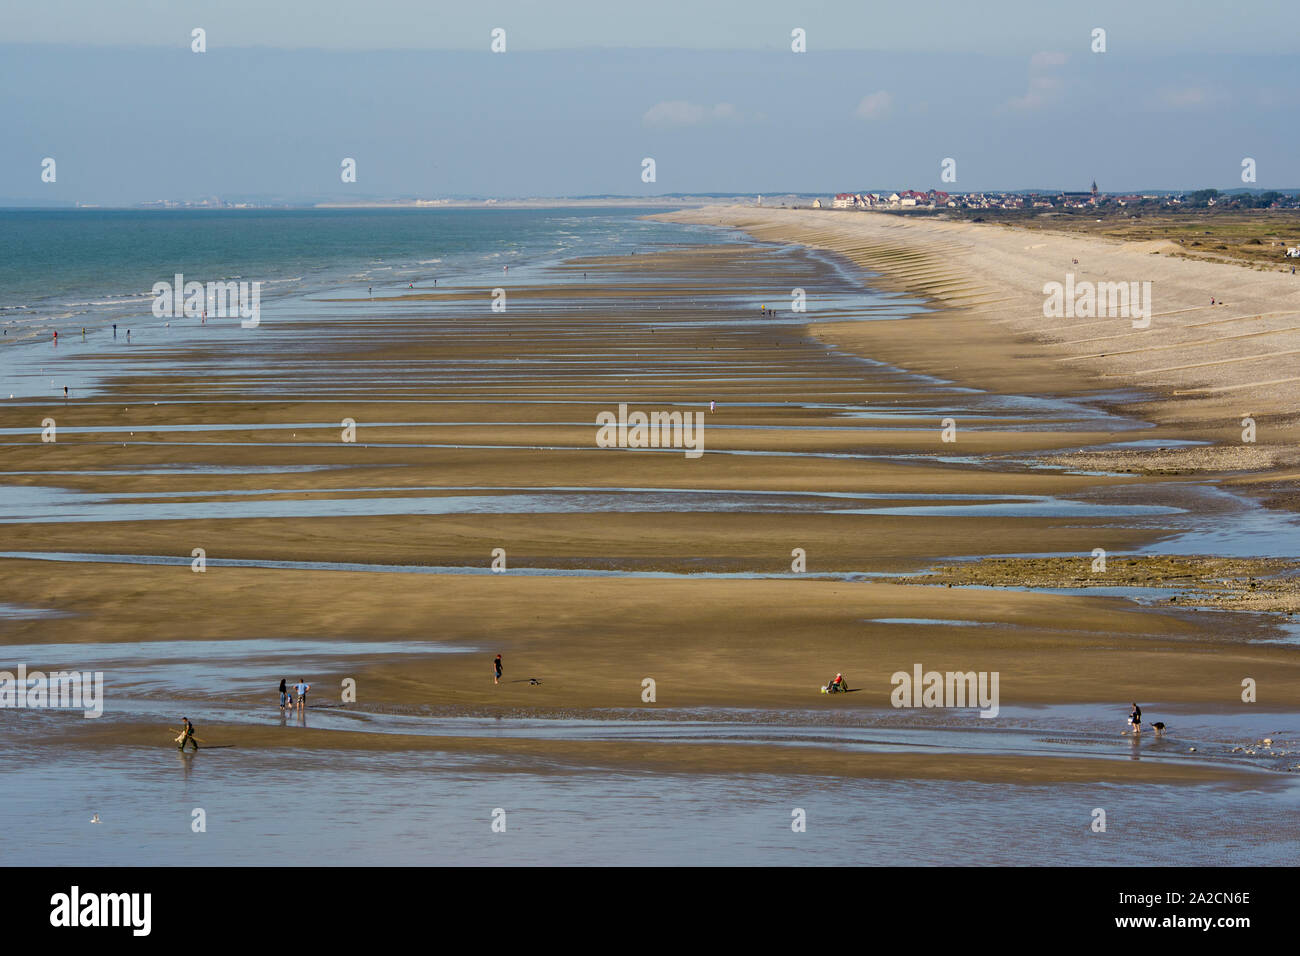 La plage d'Onival, à marée basse et sous le soleil du nord de la France et de la Baie de Somme. Cayeux sur meren attaché. Banque D'Images